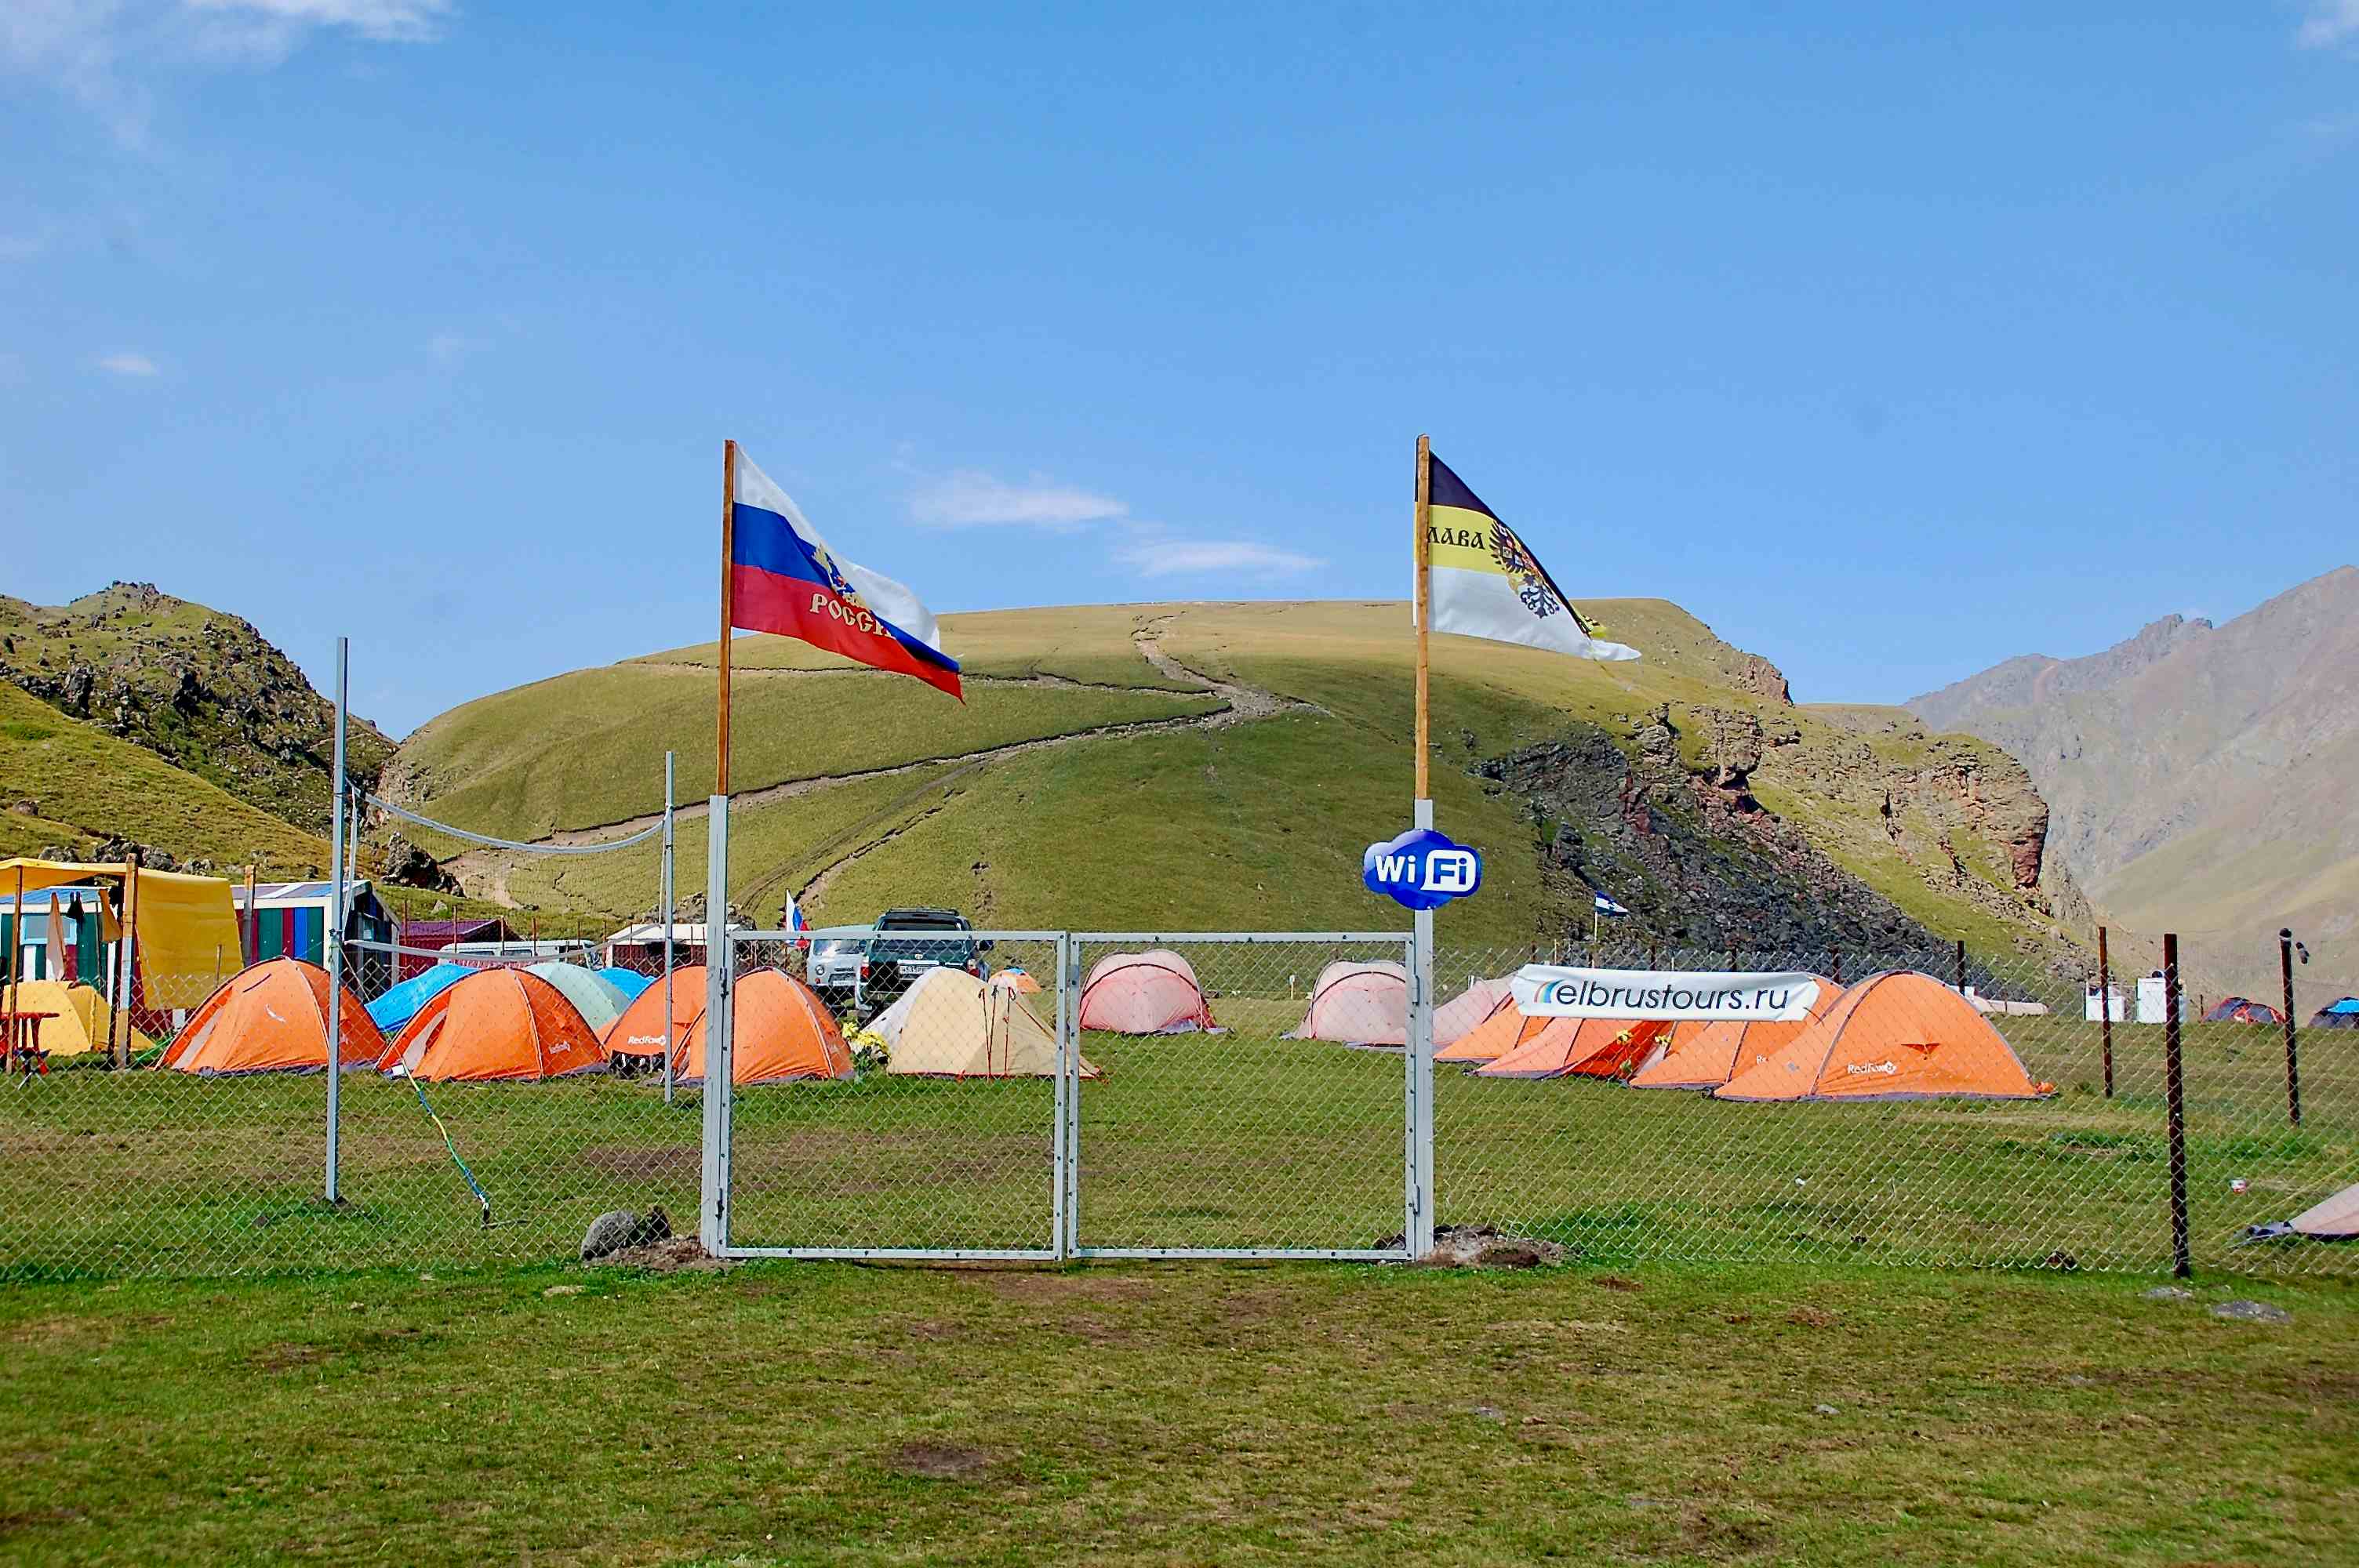 Camp von elbrustours.ru. Die haben echt WiFi (und Internet über Satellit)